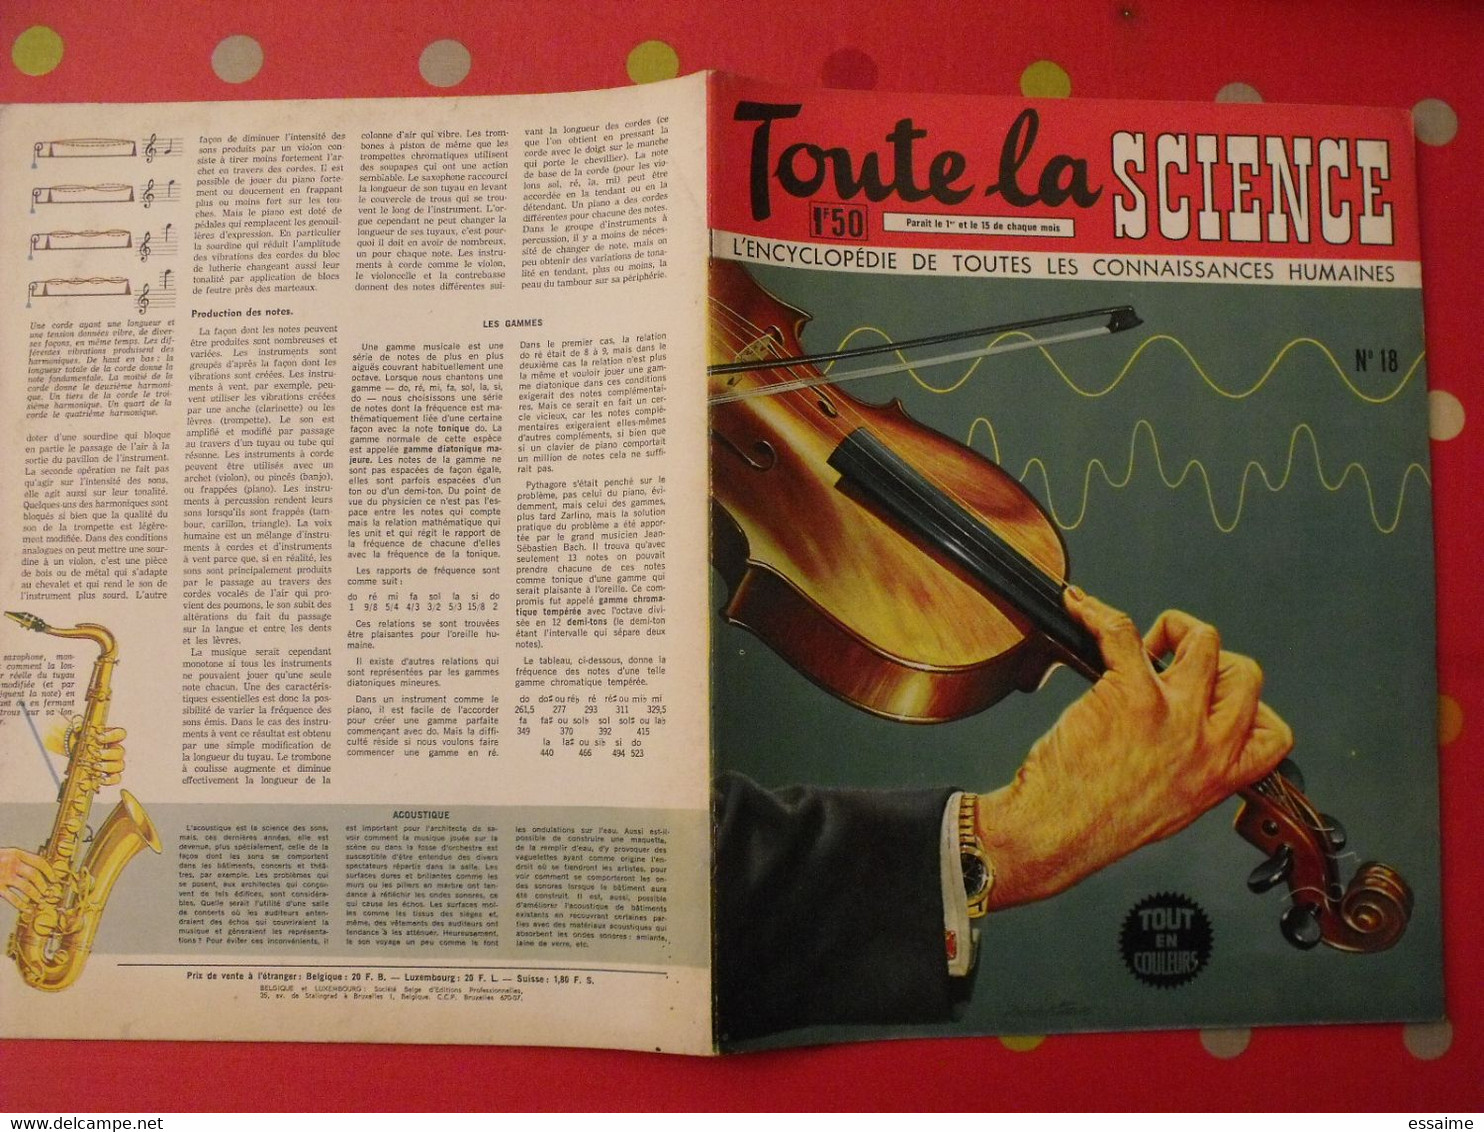 41 numéros de "Toute la science". 1963-65. encyclopédie de toutes les connaissances humaines. dessinée